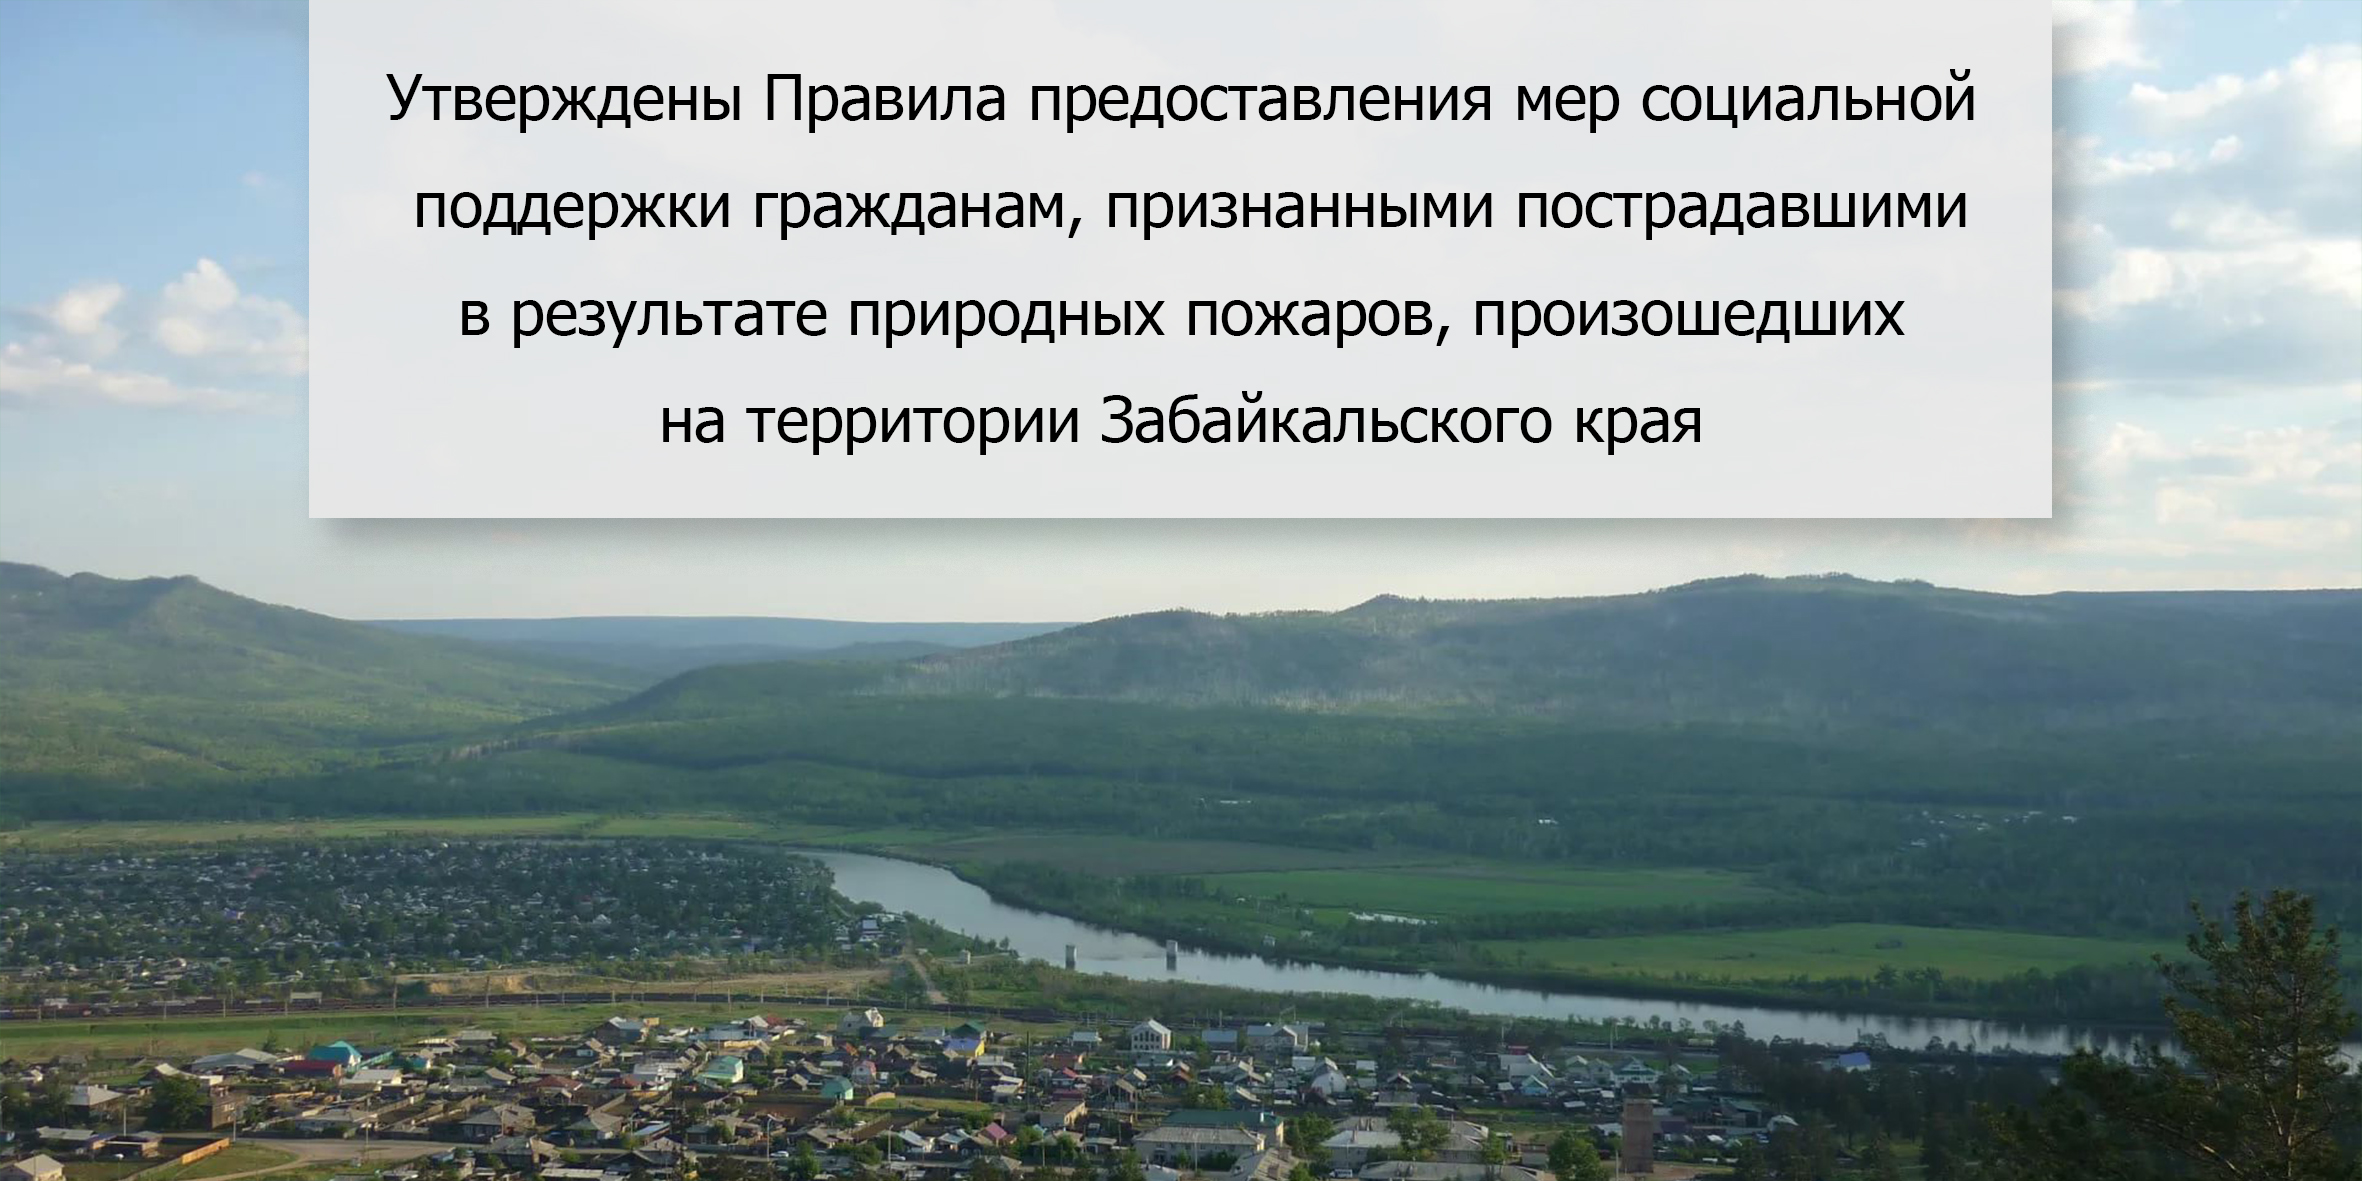 Утверждены Правила предоставления мер социальной поддержки гражданам, признанными пострадавшими в результате природных пожаров, произошедших на территории Забайкальского края.